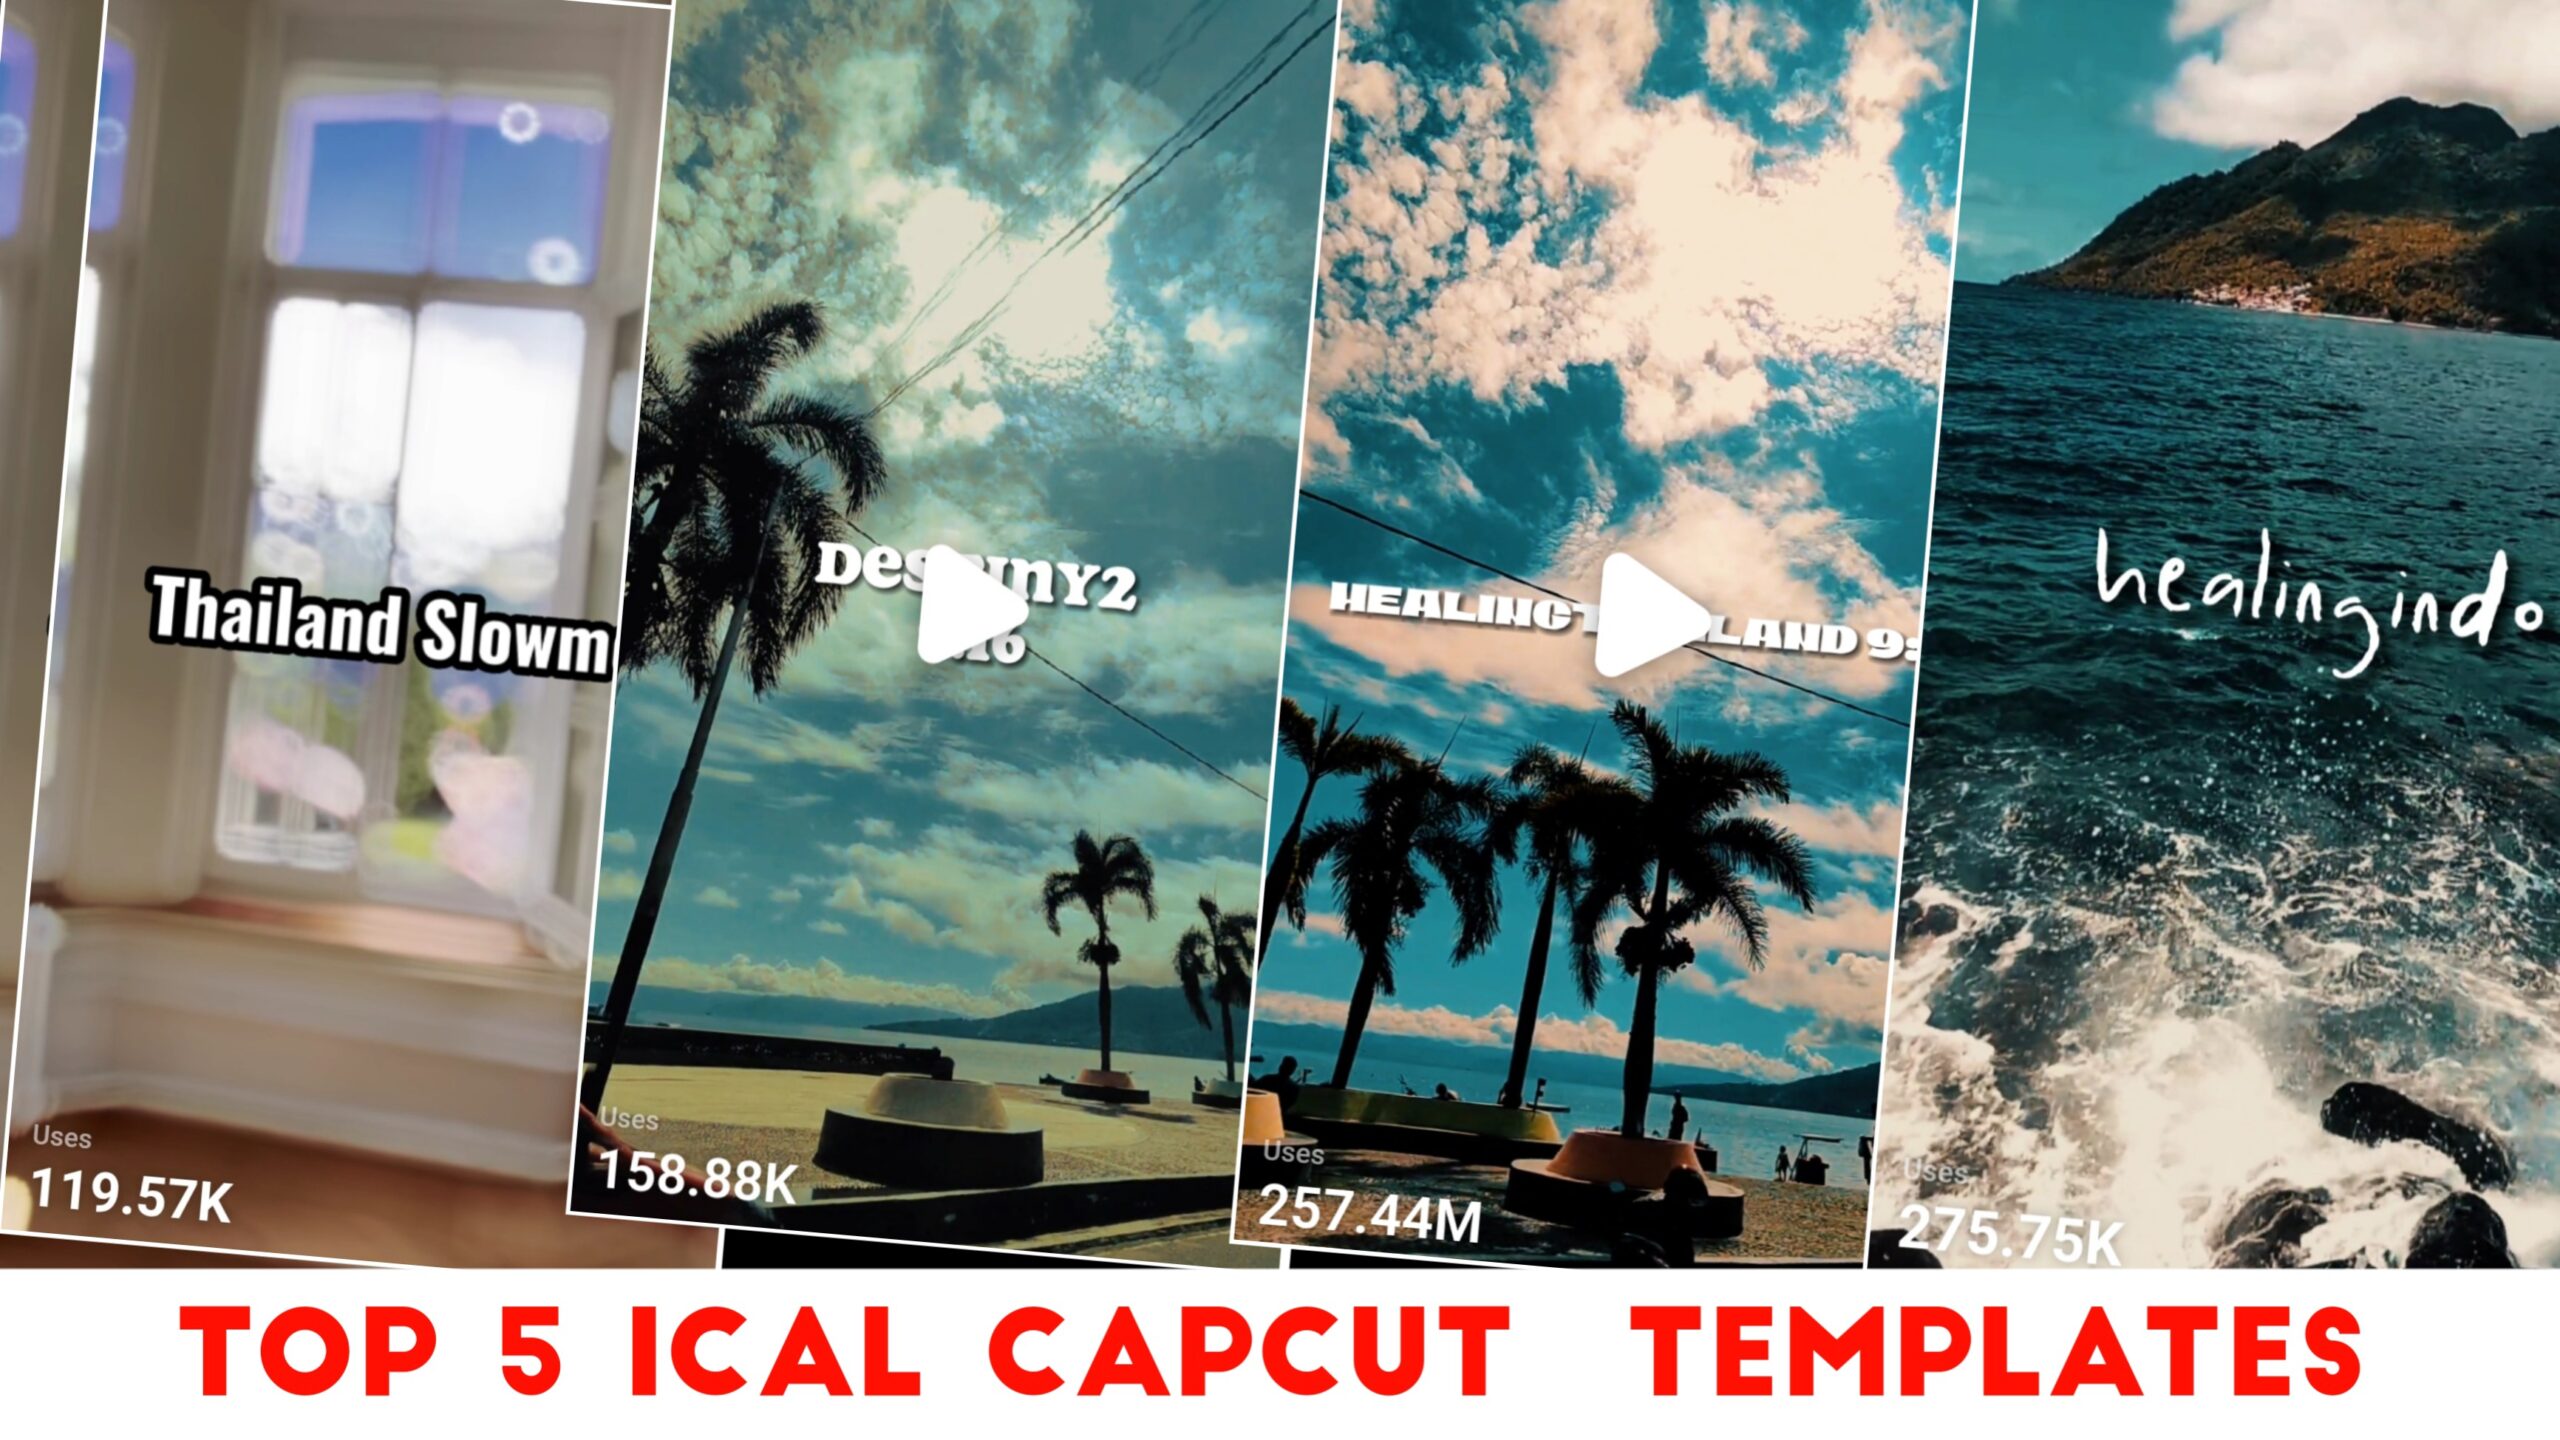 Top 5 Ical Capcut Templates